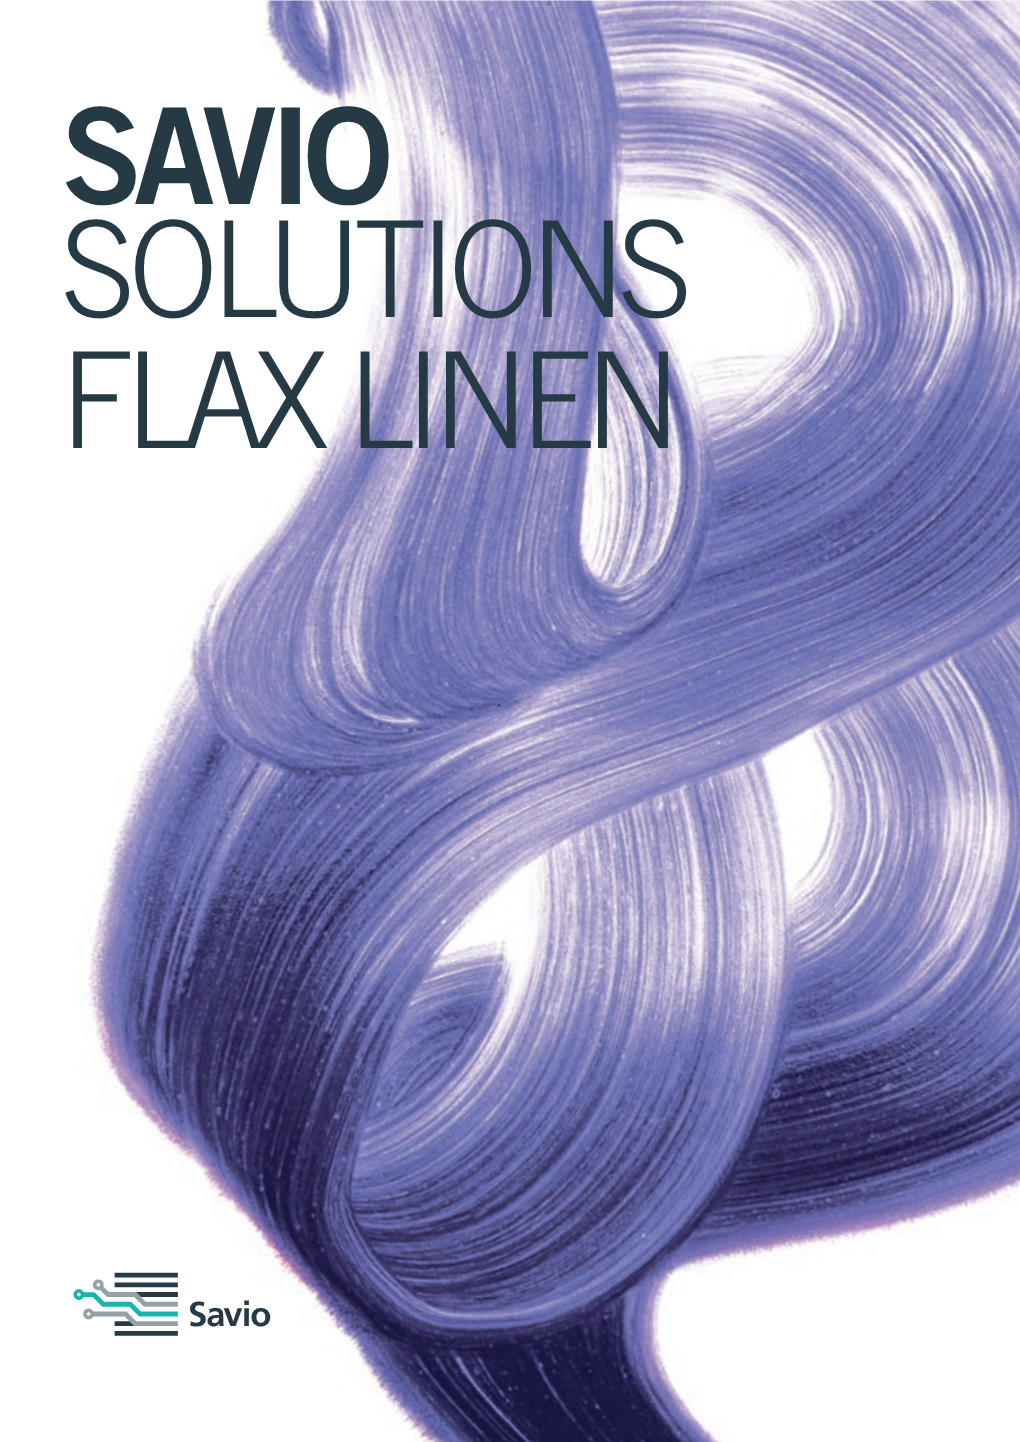 Flax Linen Saviosolutions #Flax Linen